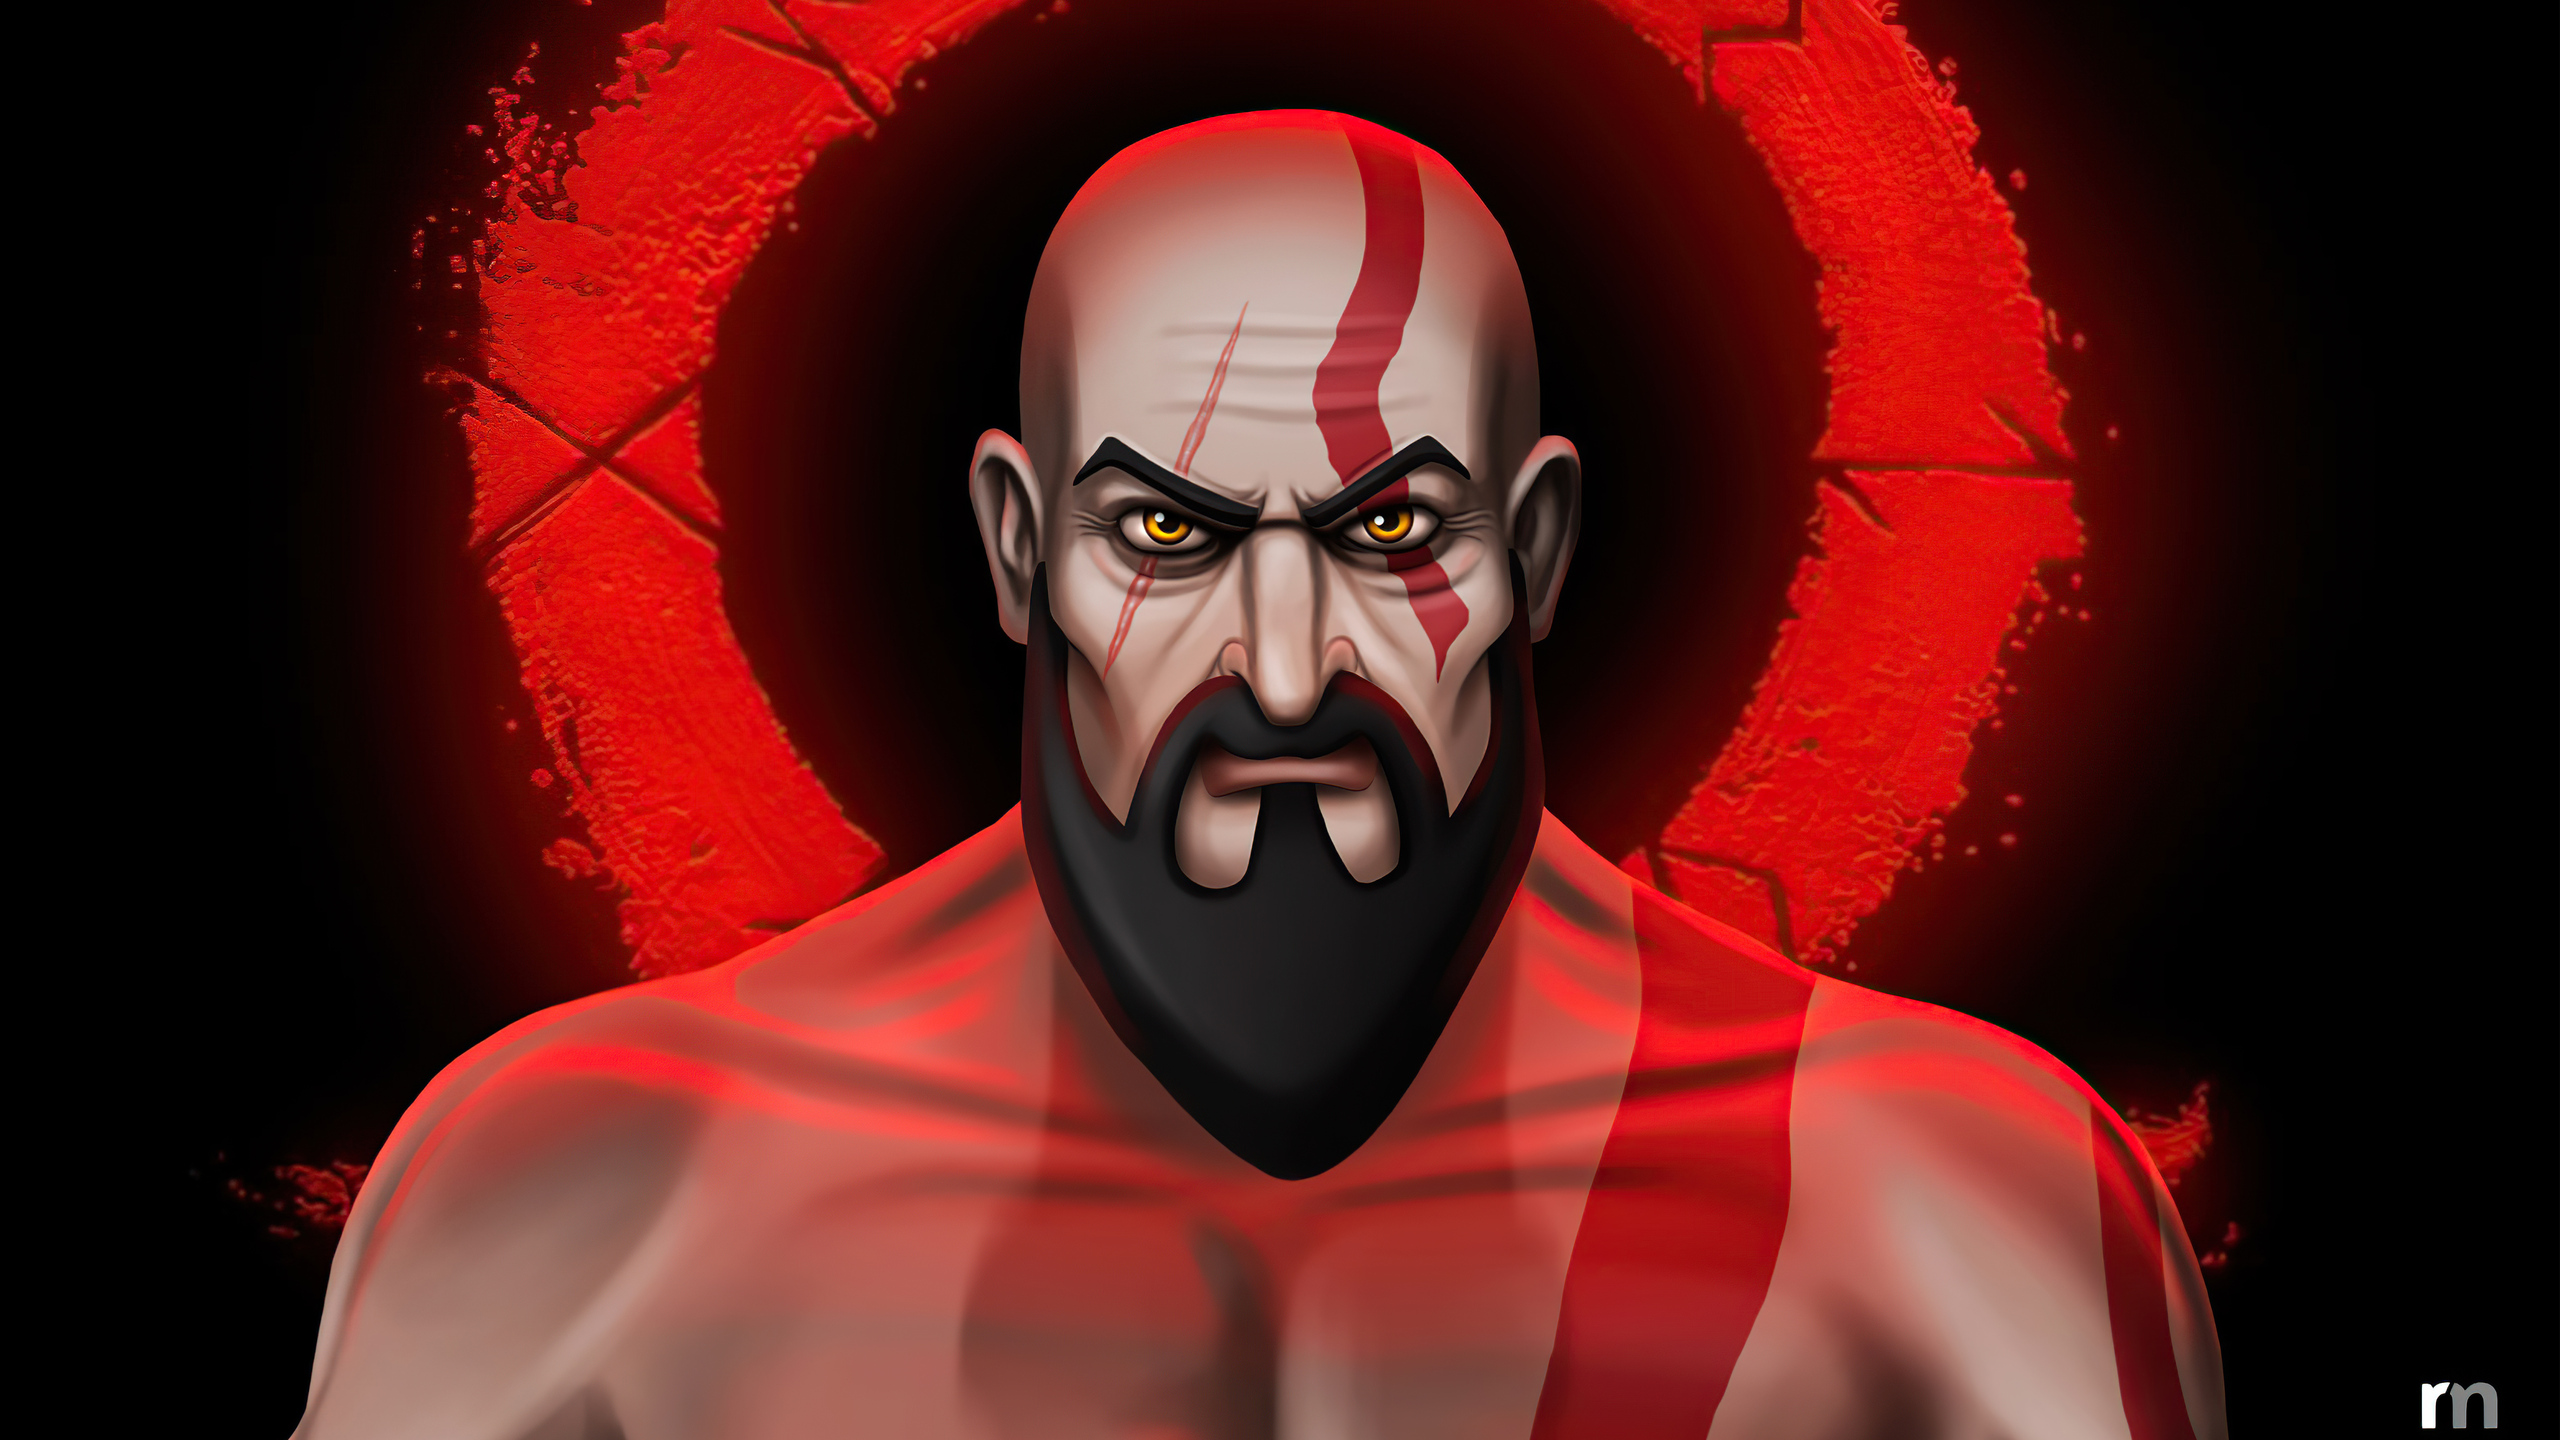 kratos-cartoon-illustration-5k-1s.jpg